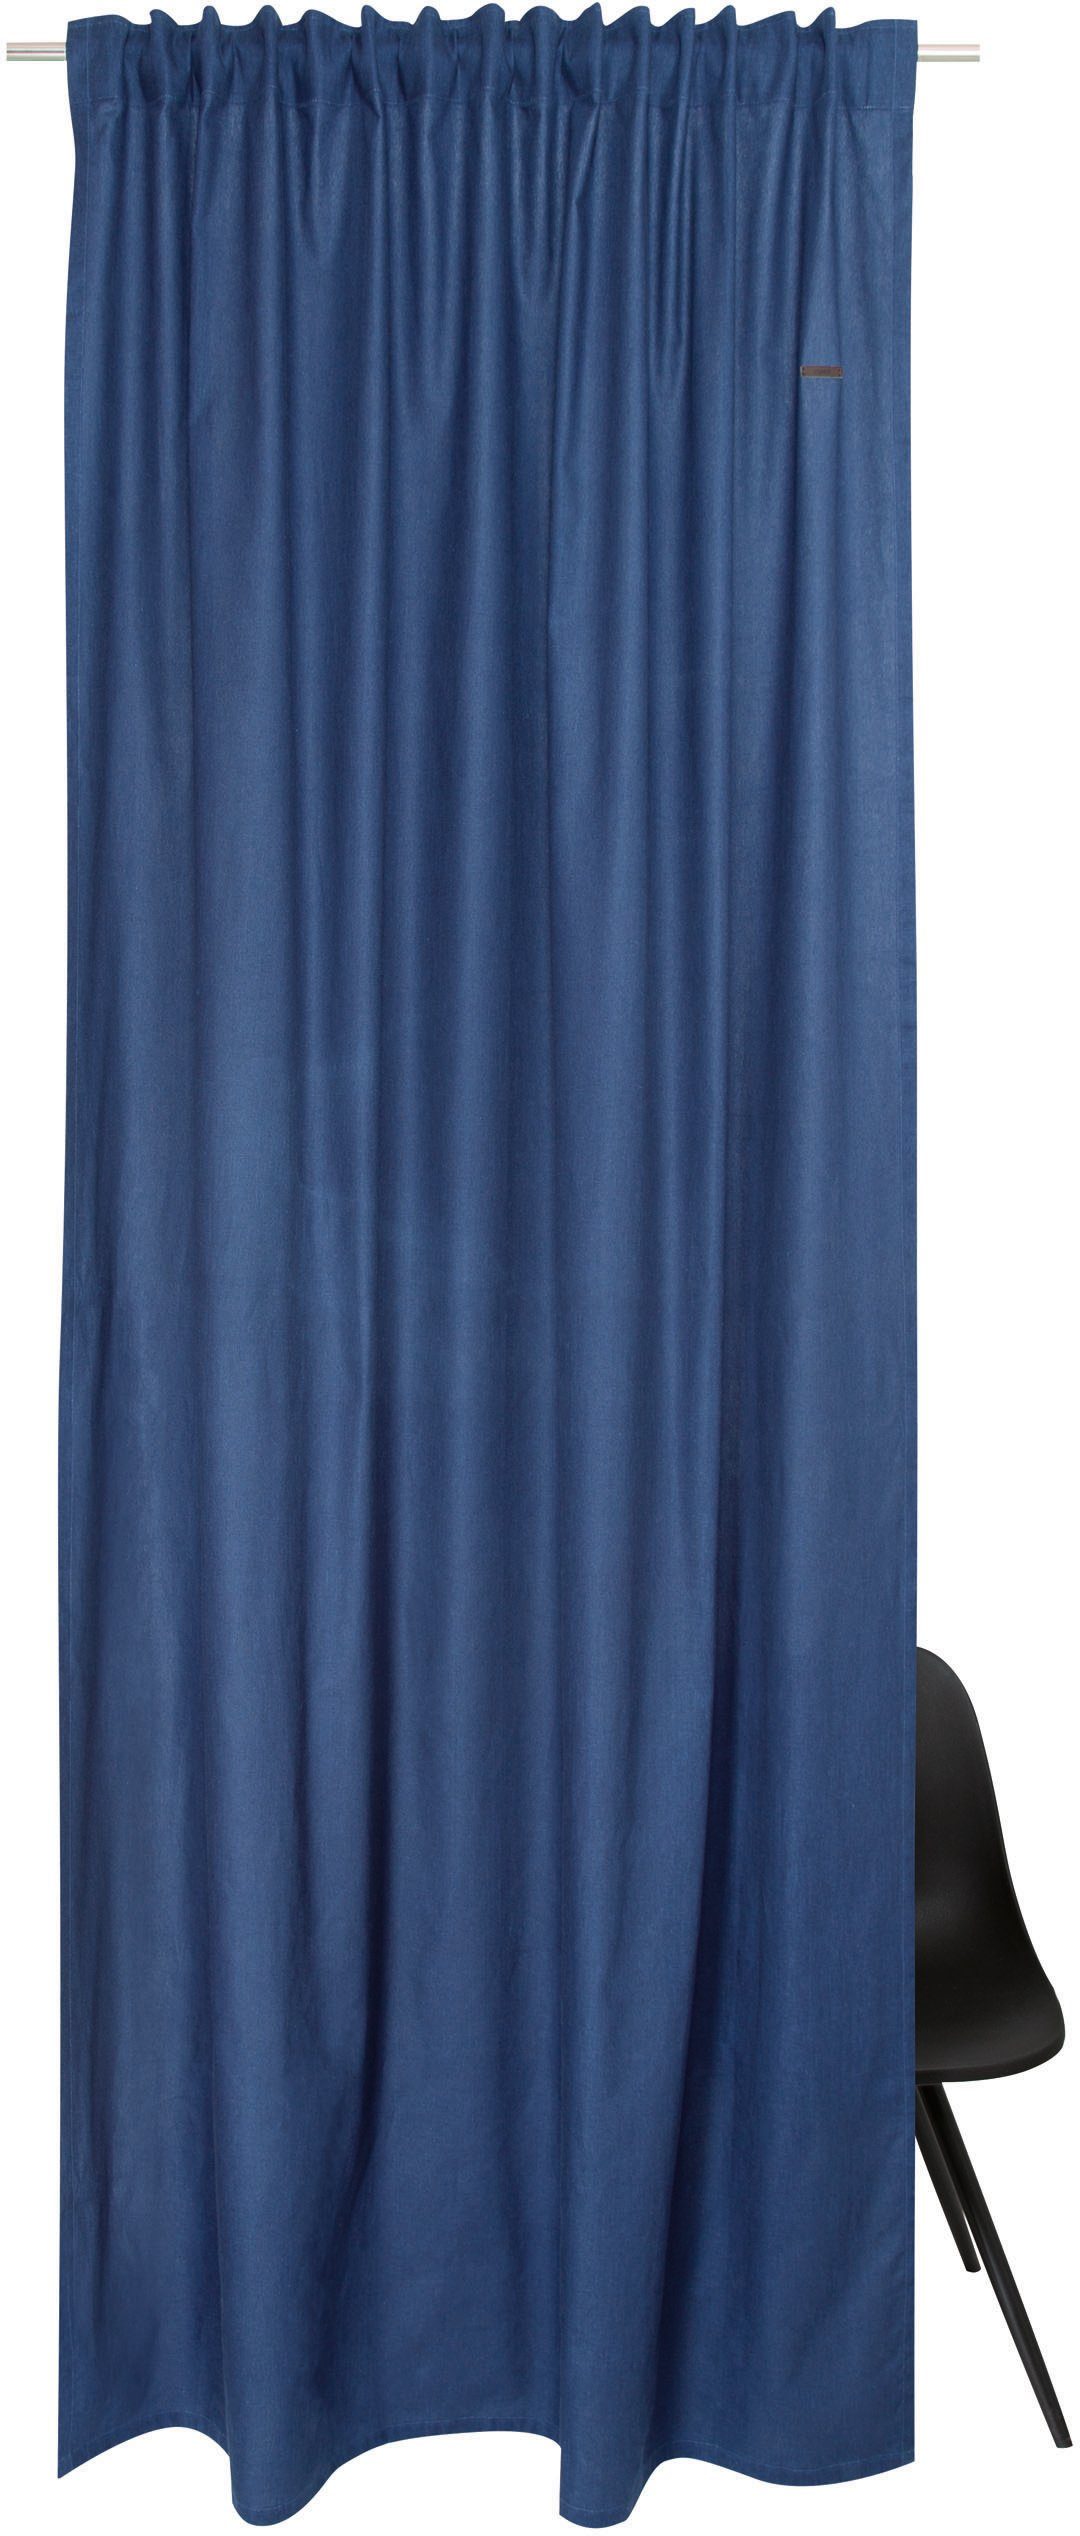 Vorhang Neo, Esprit, verdeckte Schlaufen (1 St), blickdicht, aus nachhaltiger Baumwolle, blickdicht dunkelblau/navy/marine